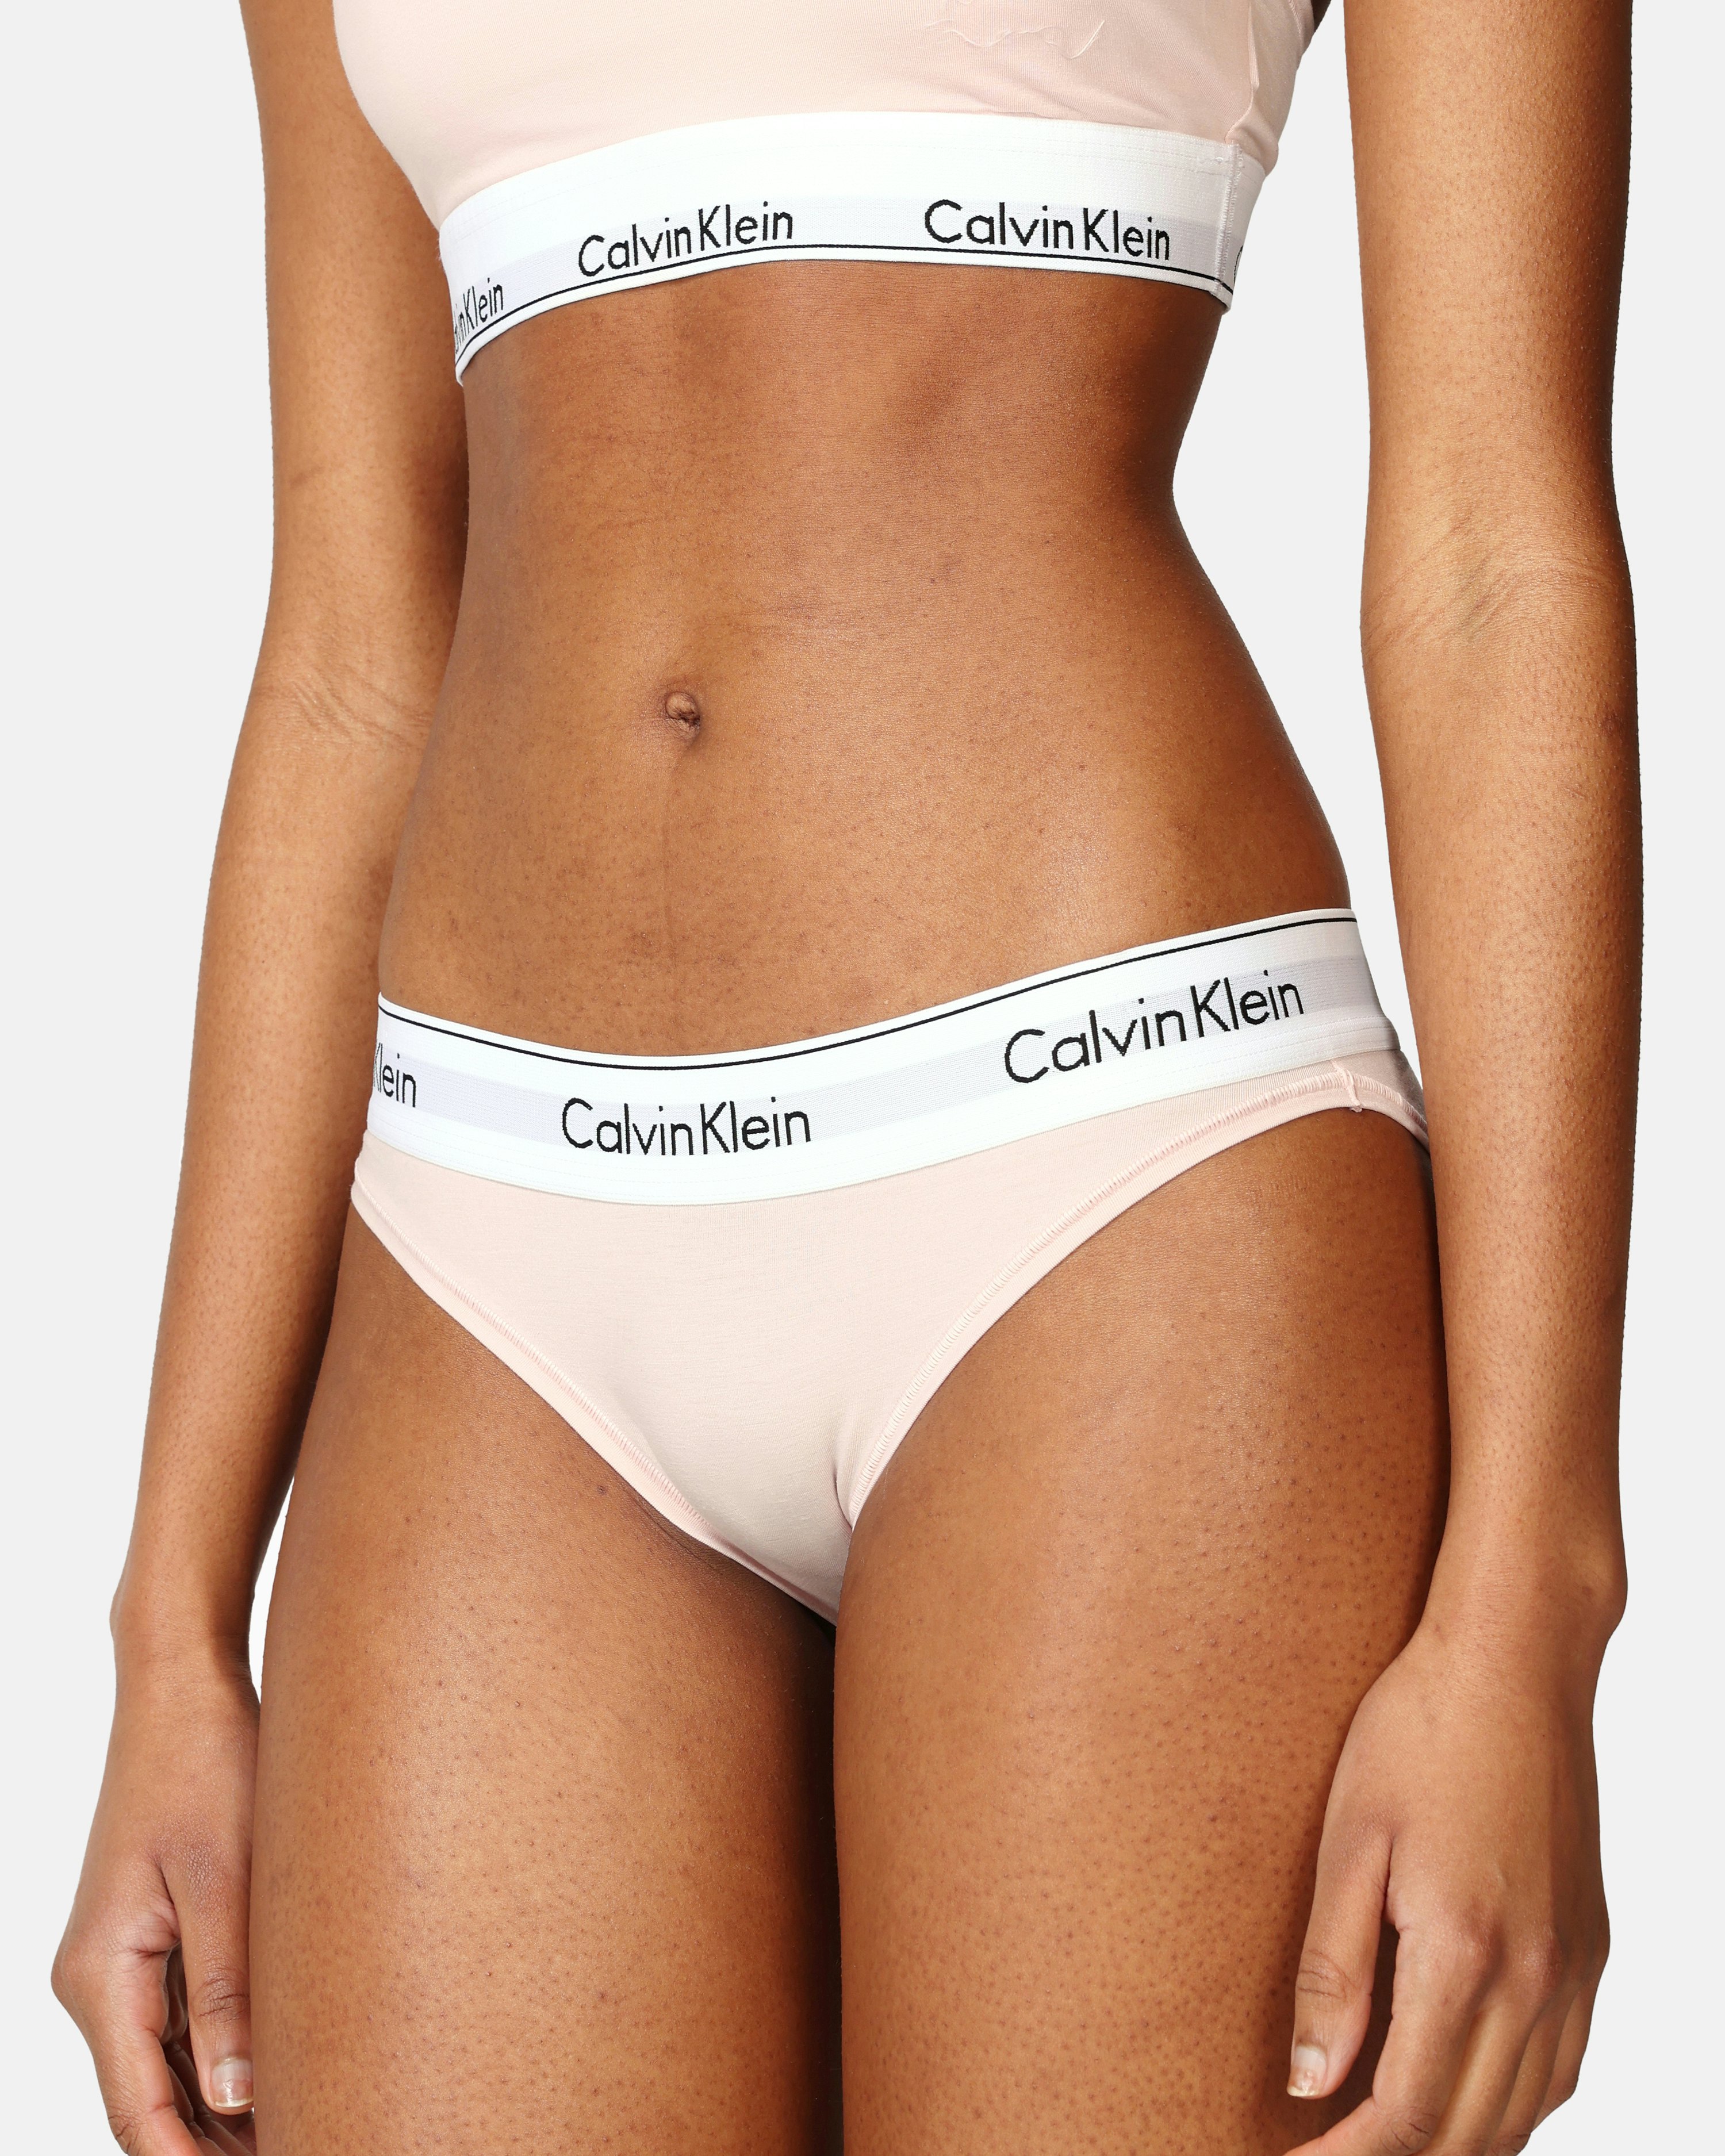 CALVIN KLEIN Women underwear